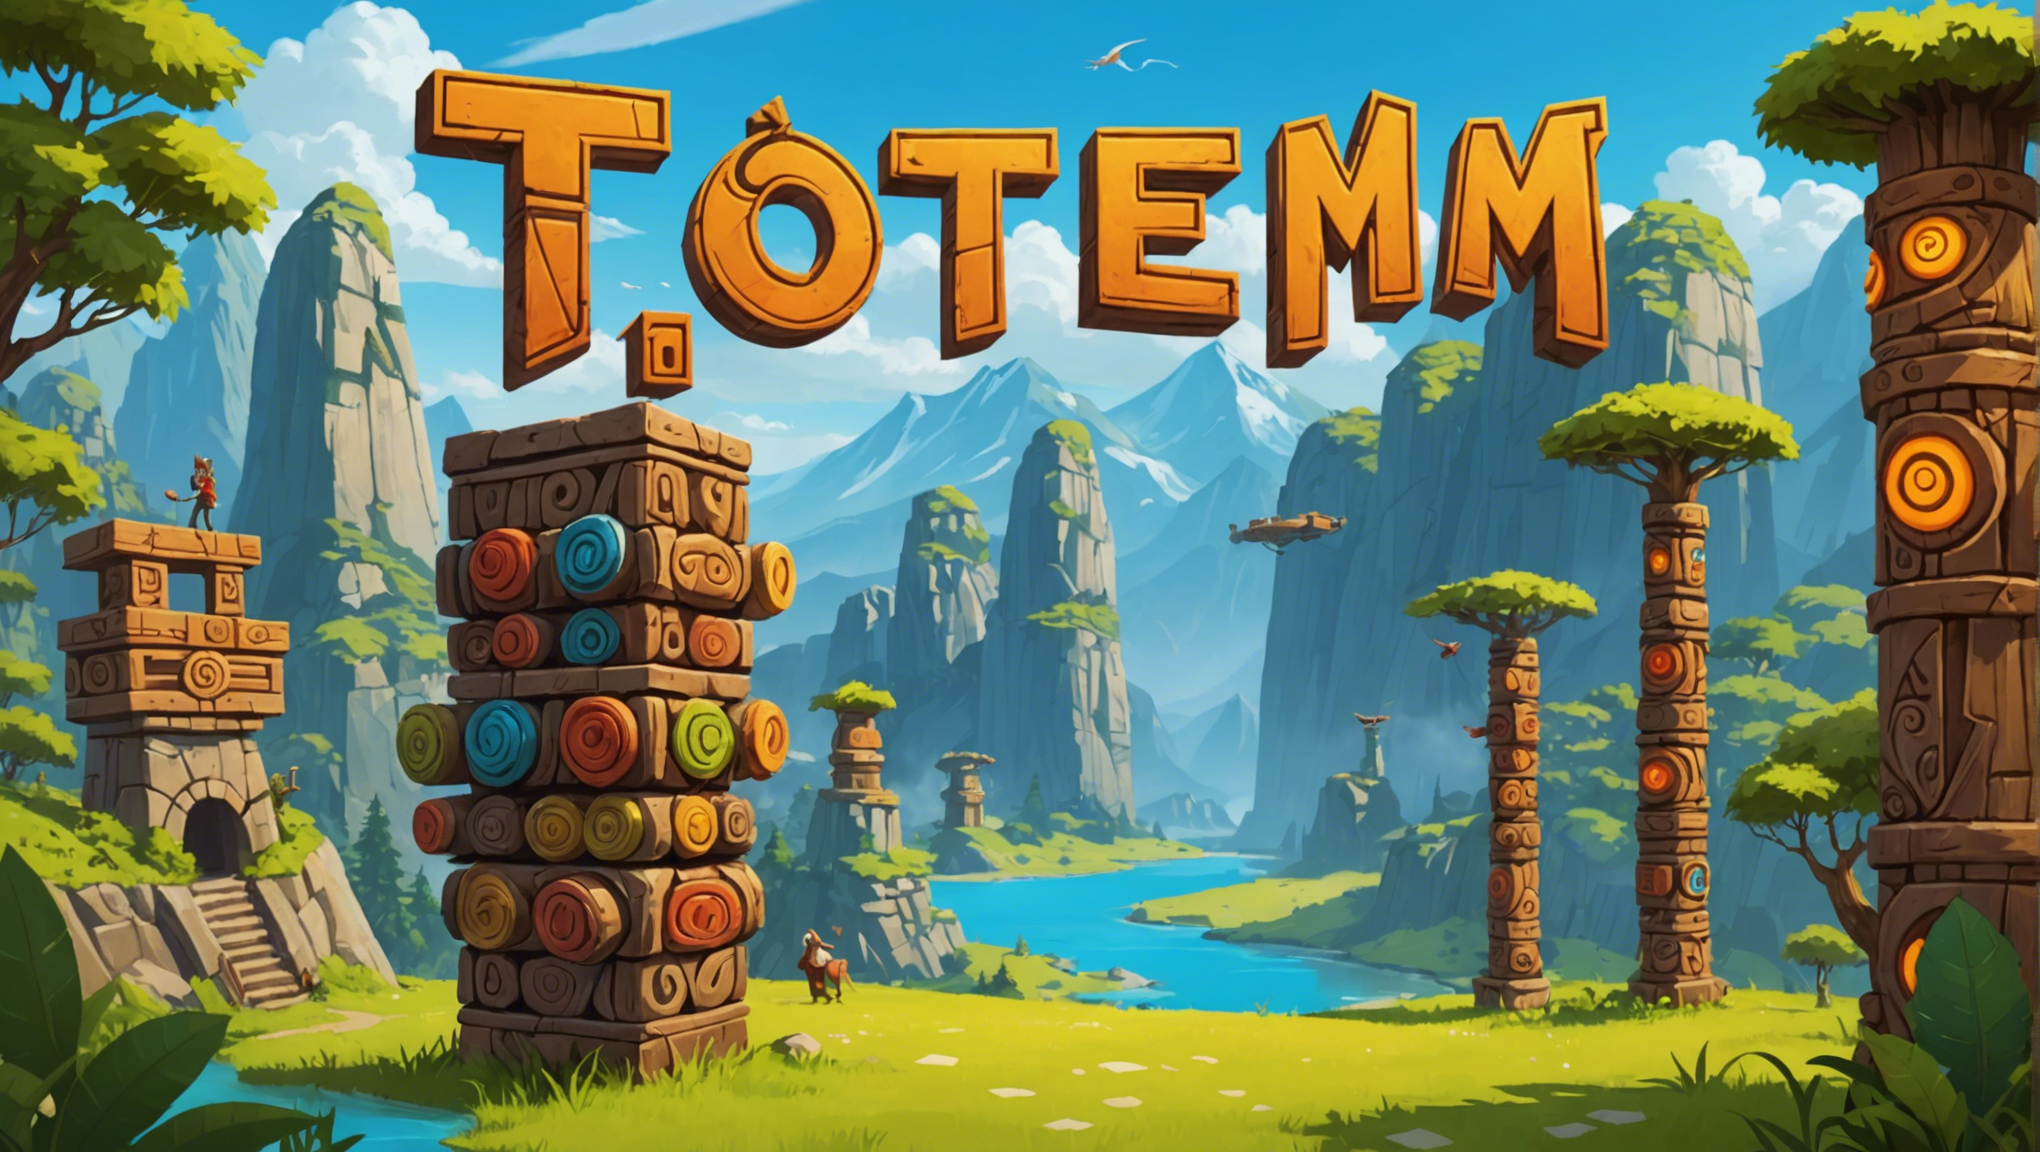 découvrez totem, le jeu qui fait du bien : une expérience d’édification personnelle passionnante et enrichissante.